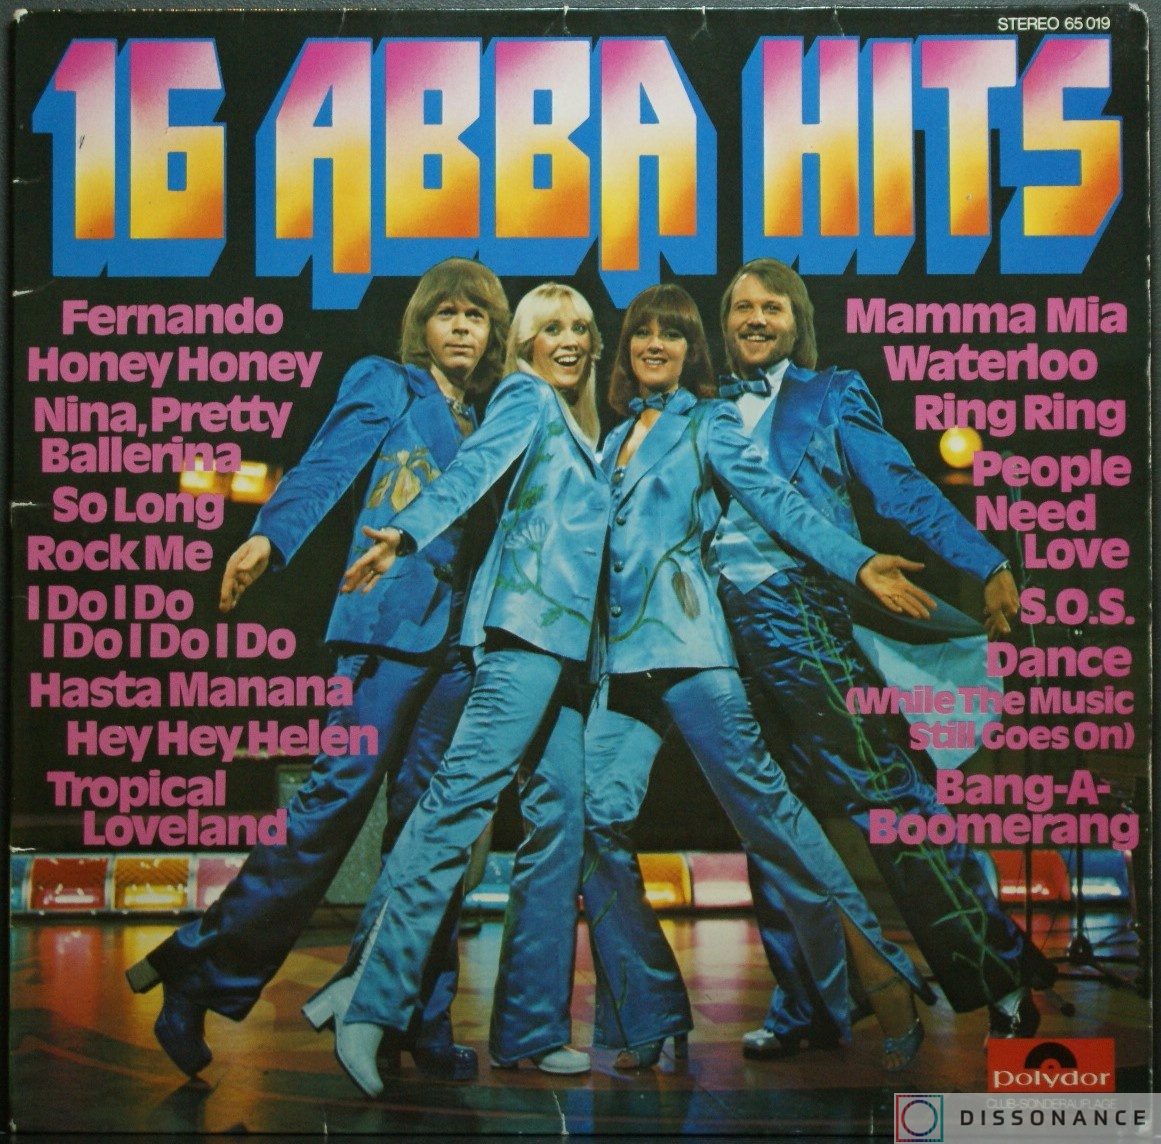 Виниловая пластинка Abba - 16 Abba Hits (1976) - фото обложки